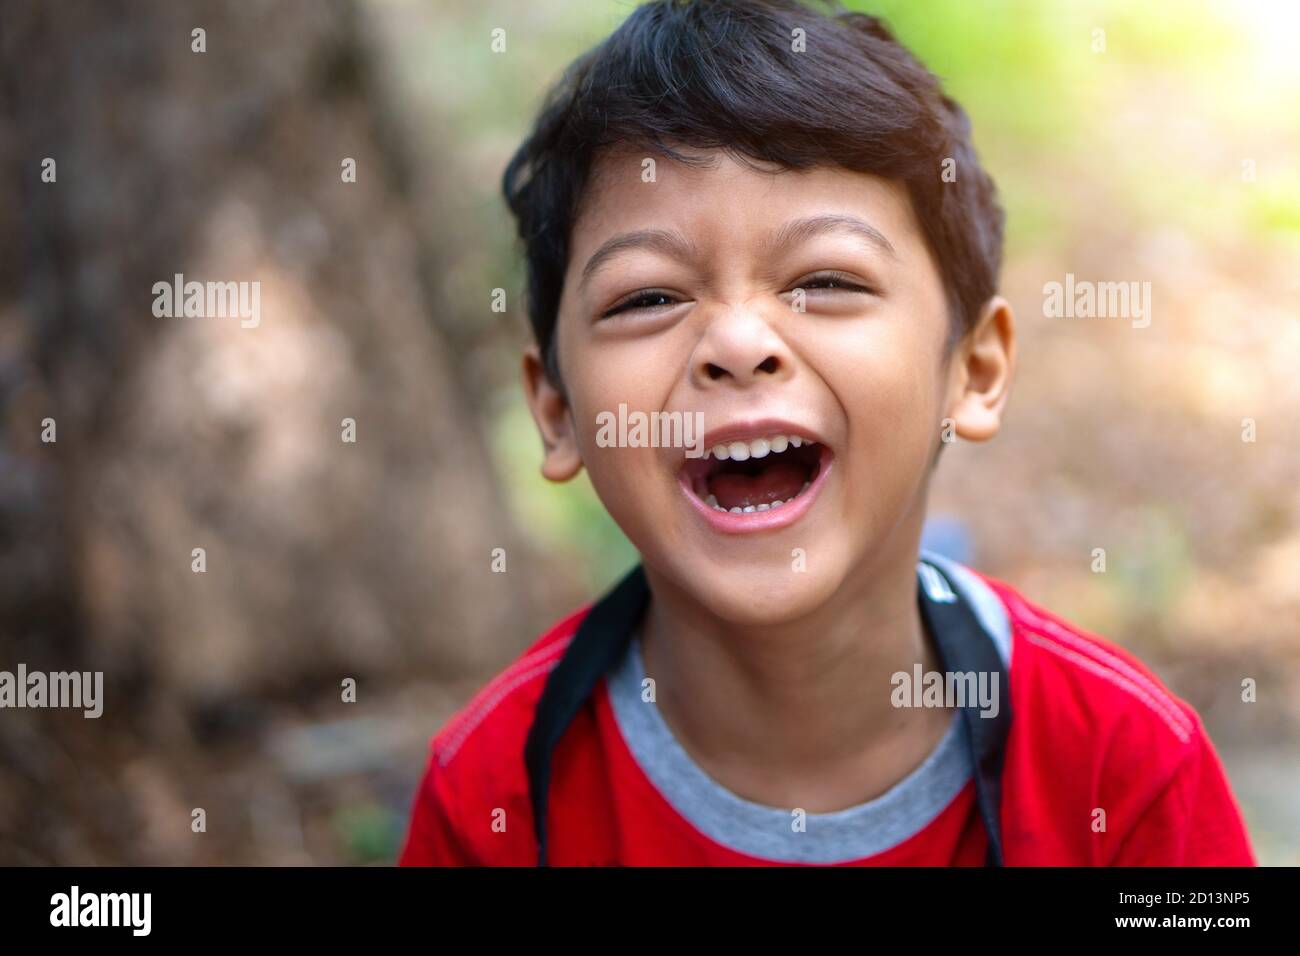 Un chico que llevaba una camisa roja se rió feliz Foto de stock